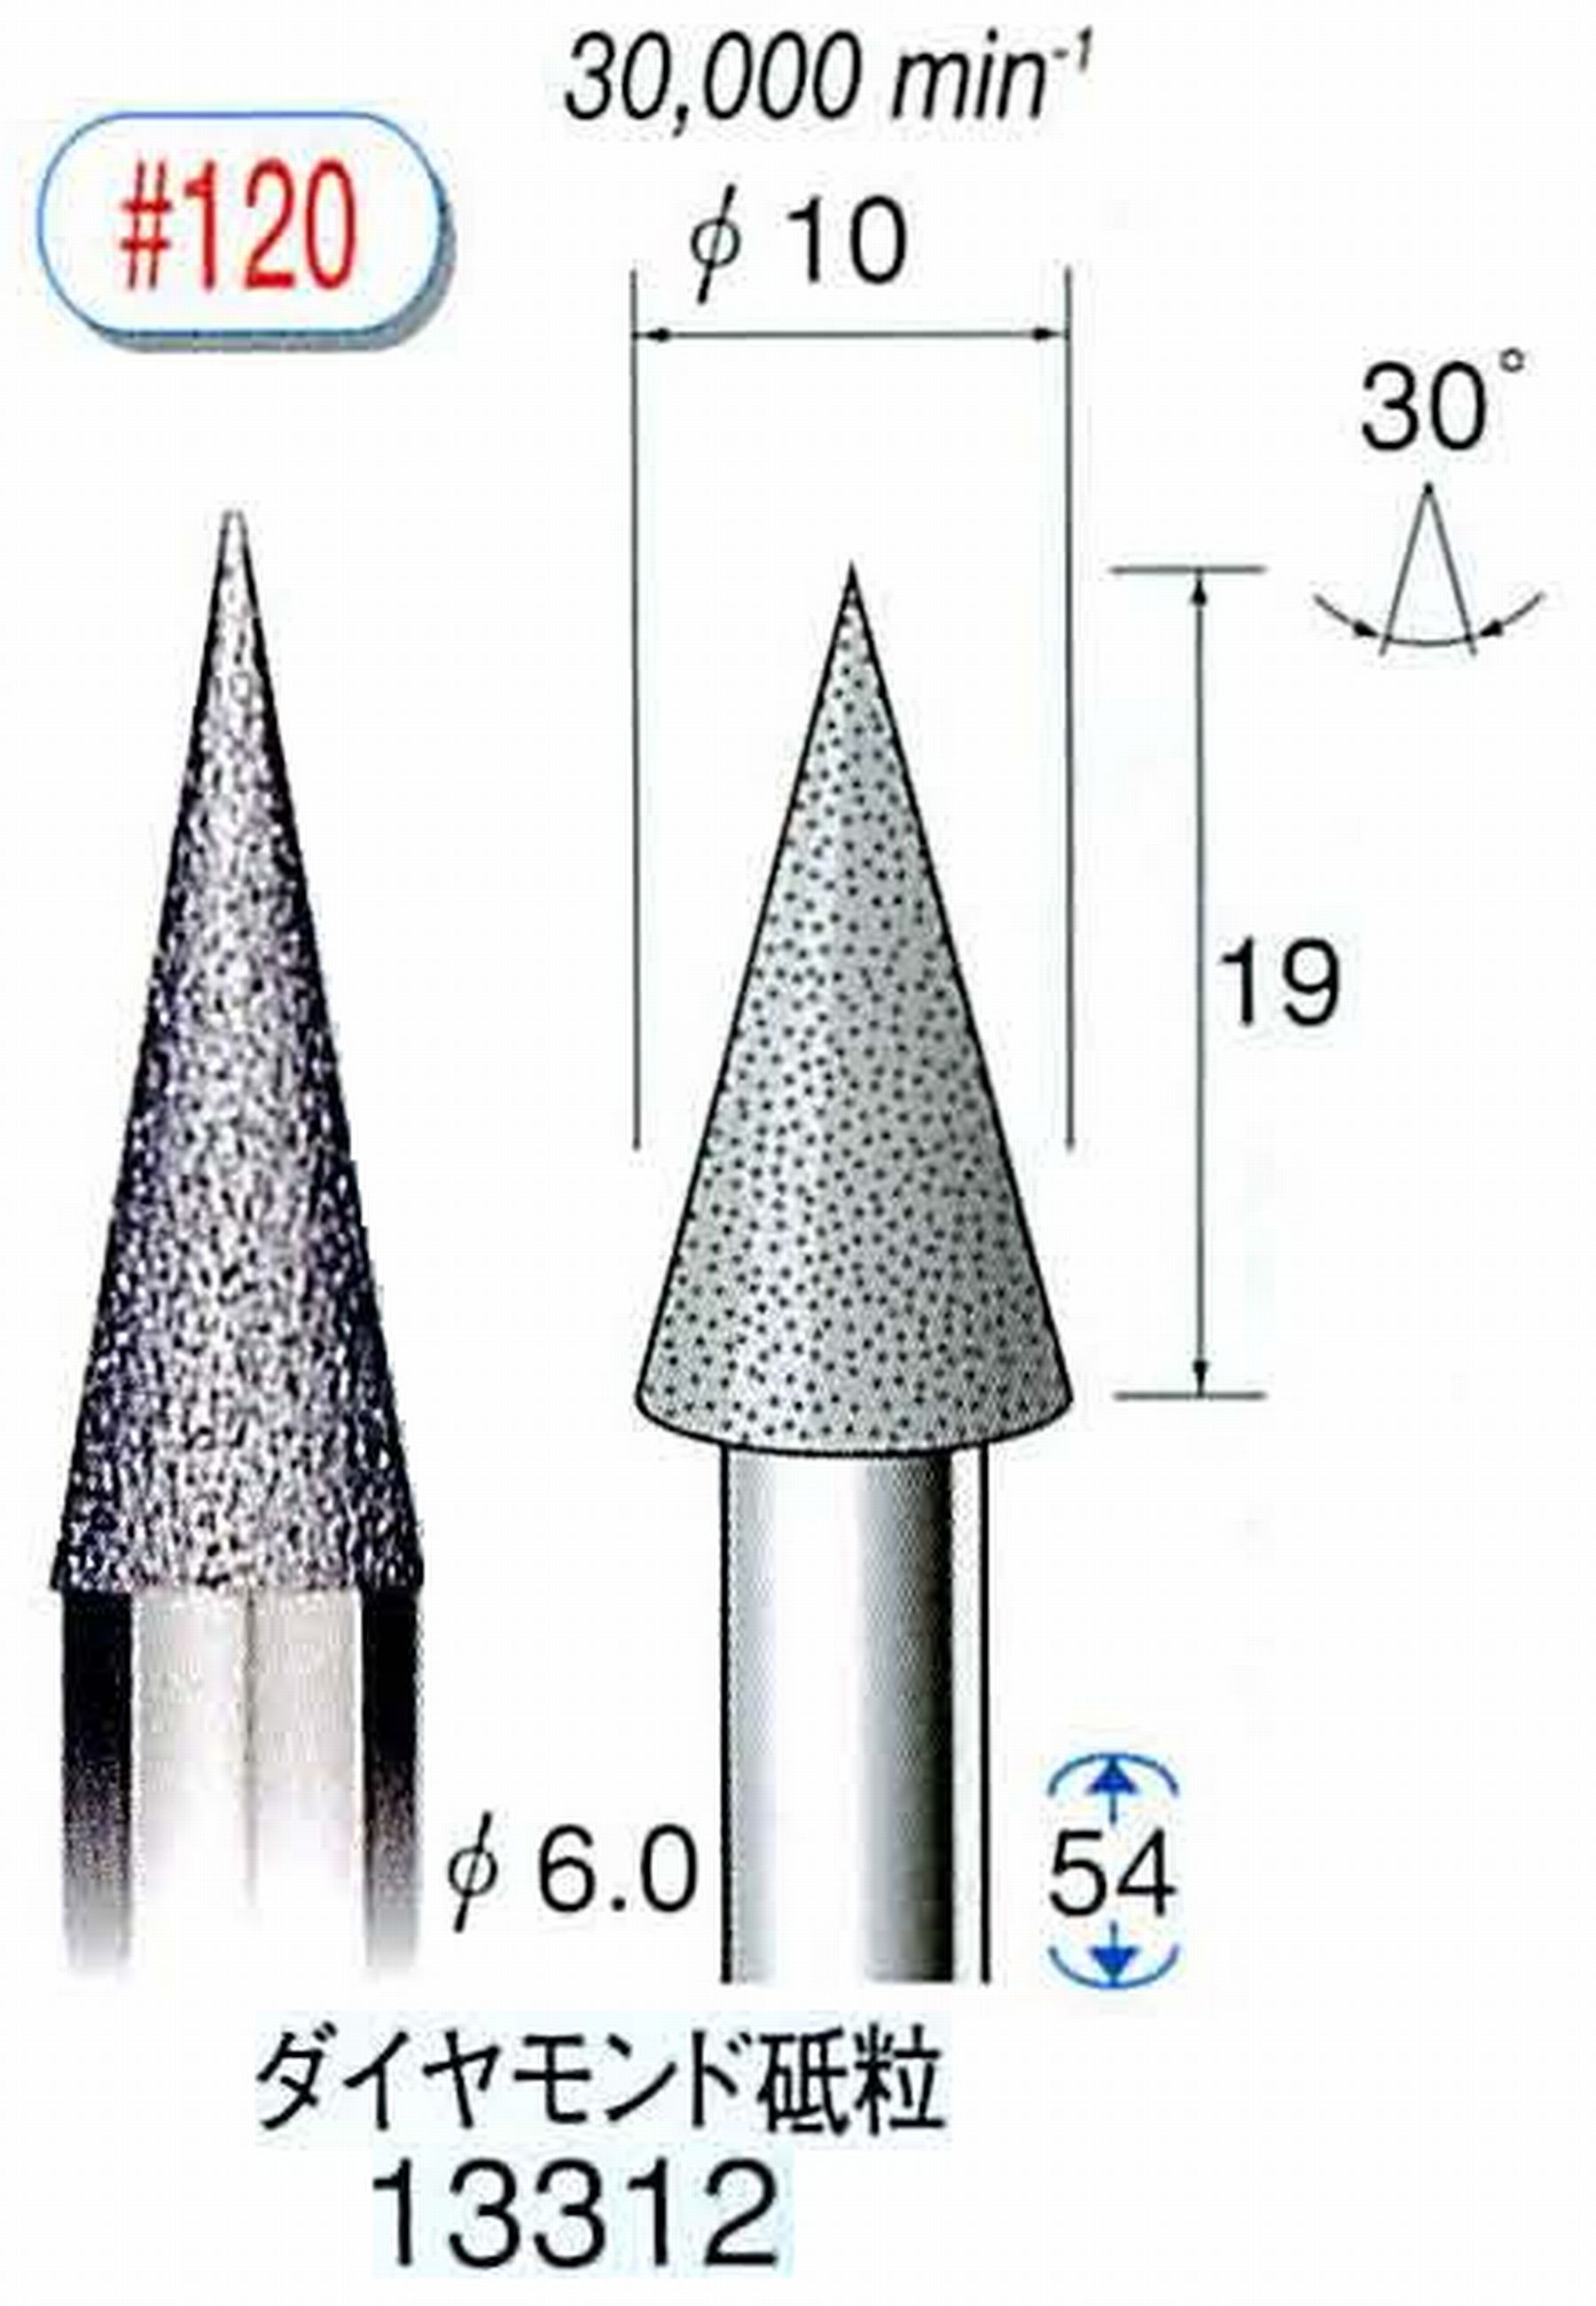 ナカニシ/NAKANISHI 電着ダイヤモンド ダイヤモンド砥粒 軸径(シャンク)φ6.0mm 13312